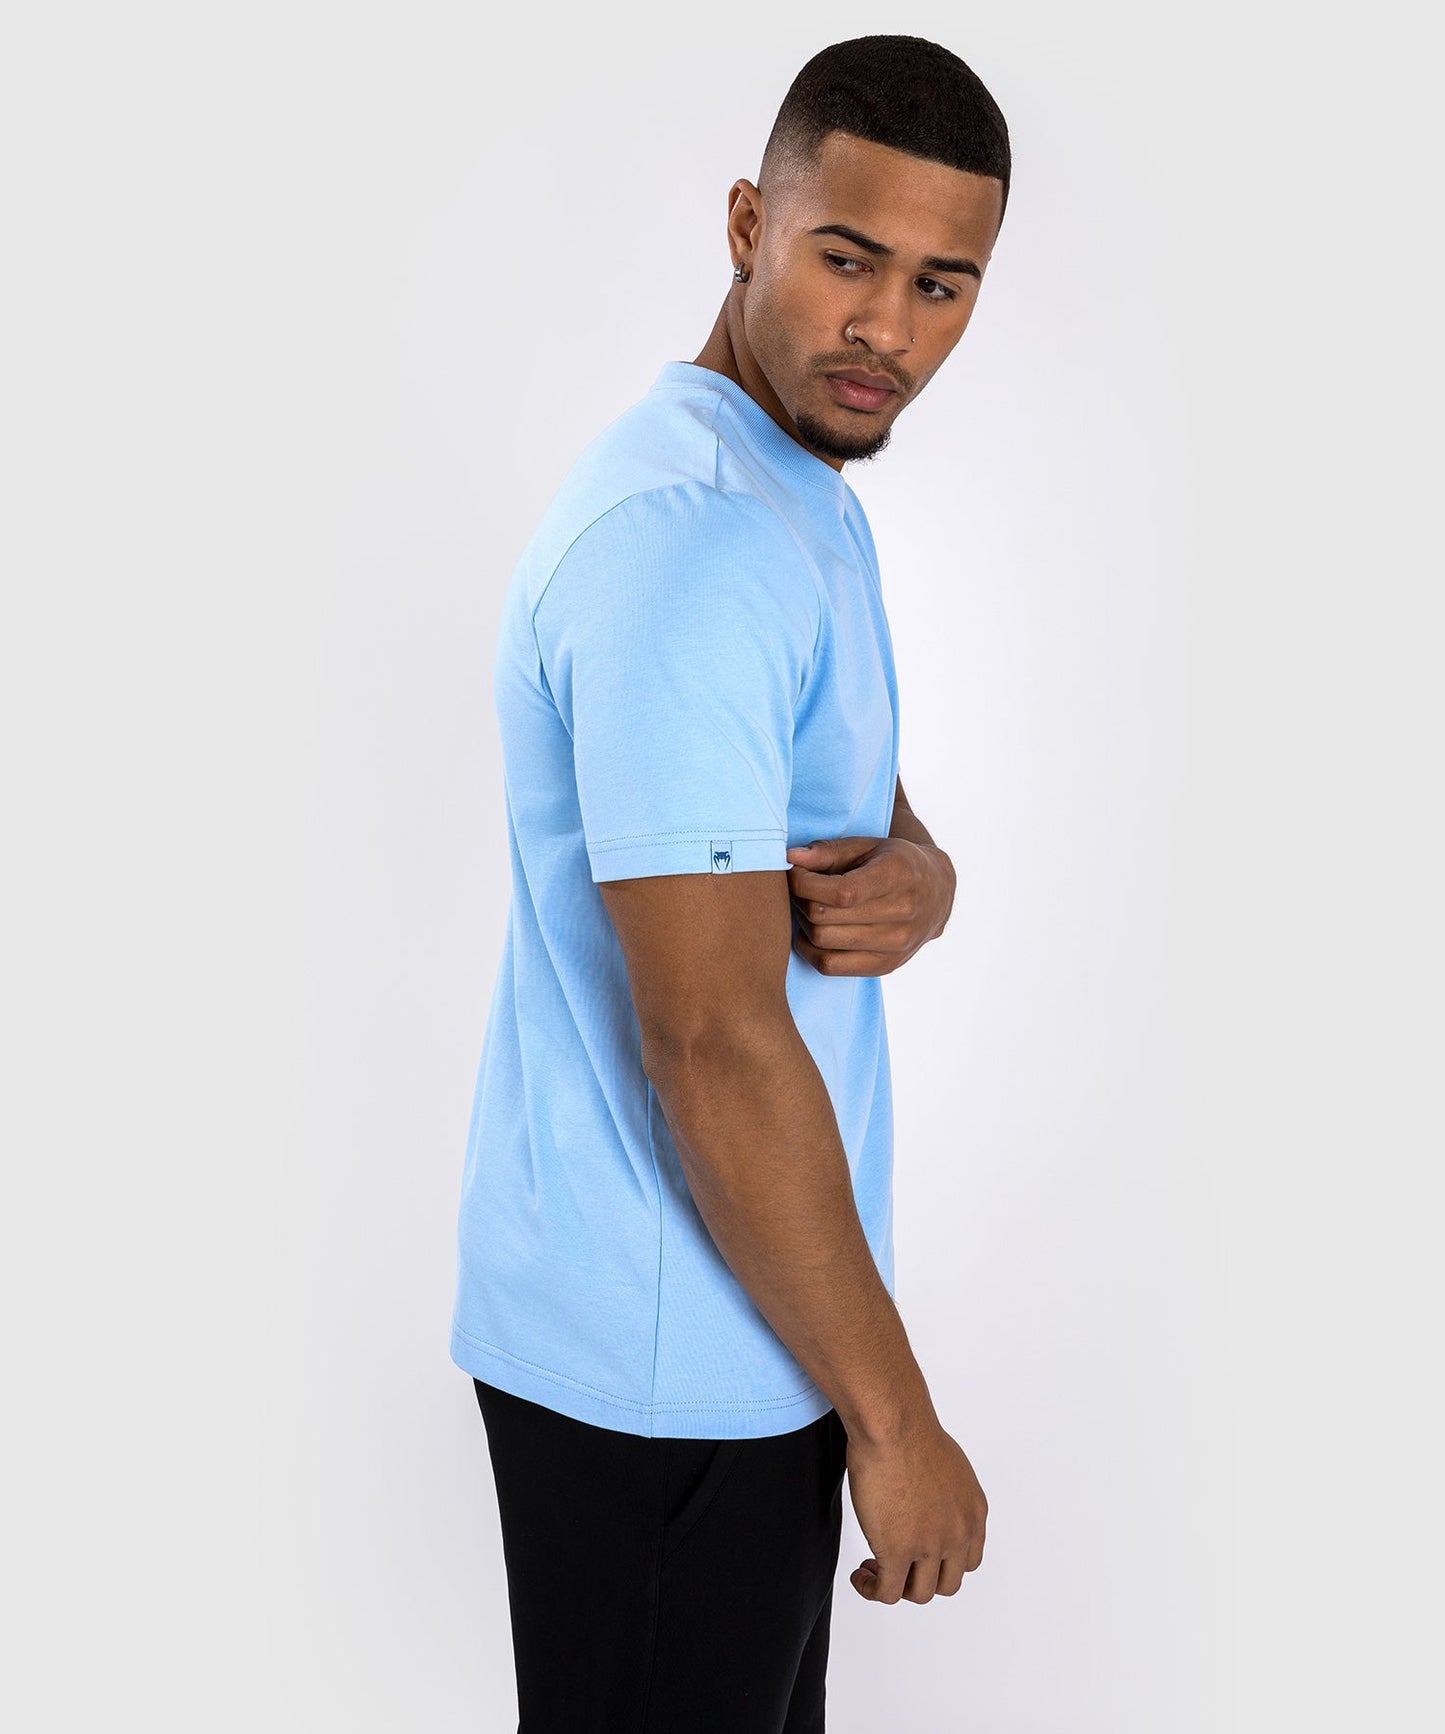 T-Shirt Venum Contender - Bleu océan